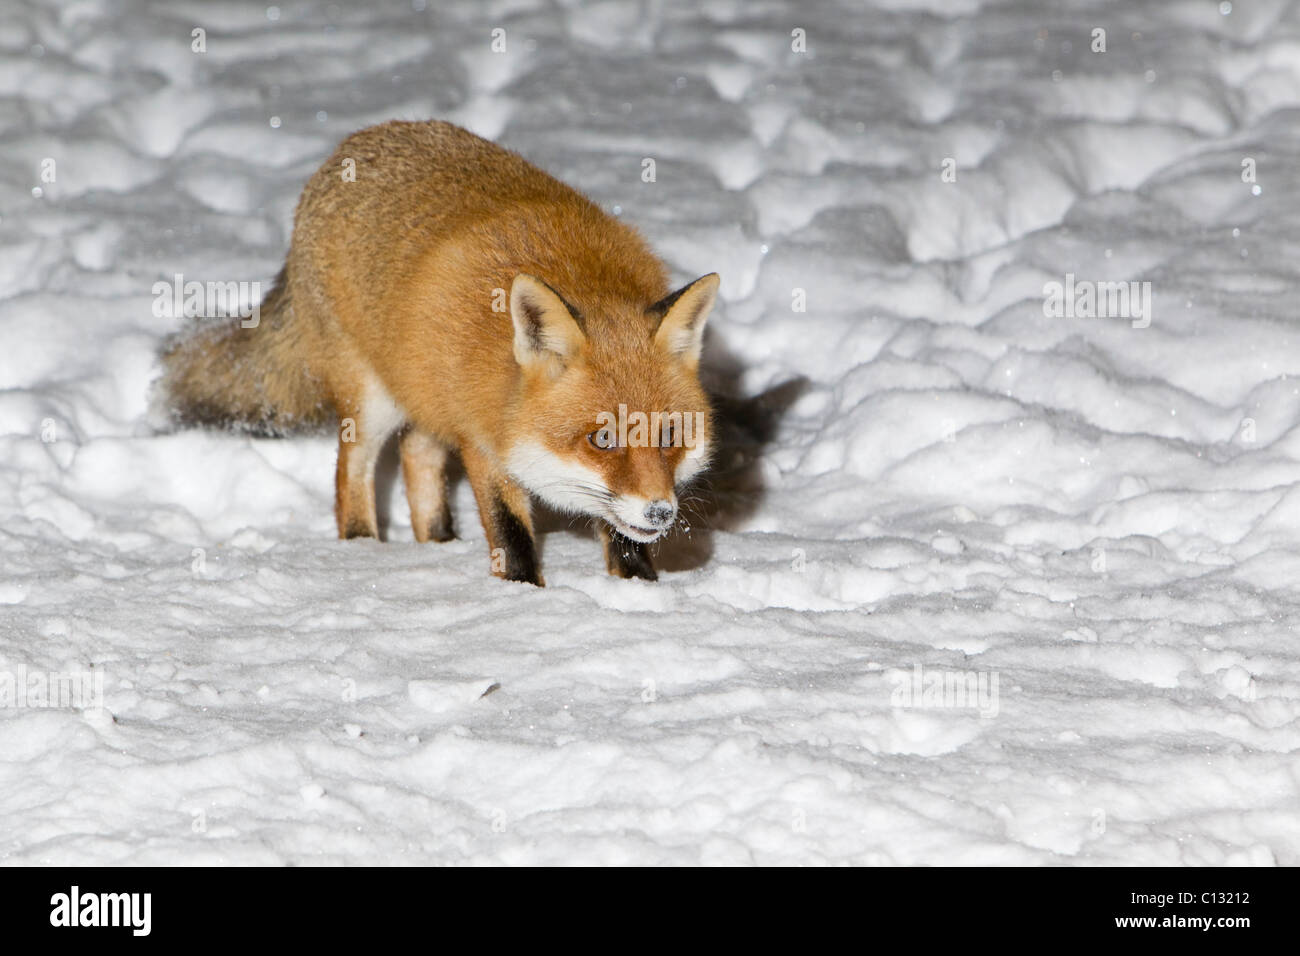 Unión el zorro (Vulpes vulpes), jardín de invierno, cubierto de nieve Foto de stock